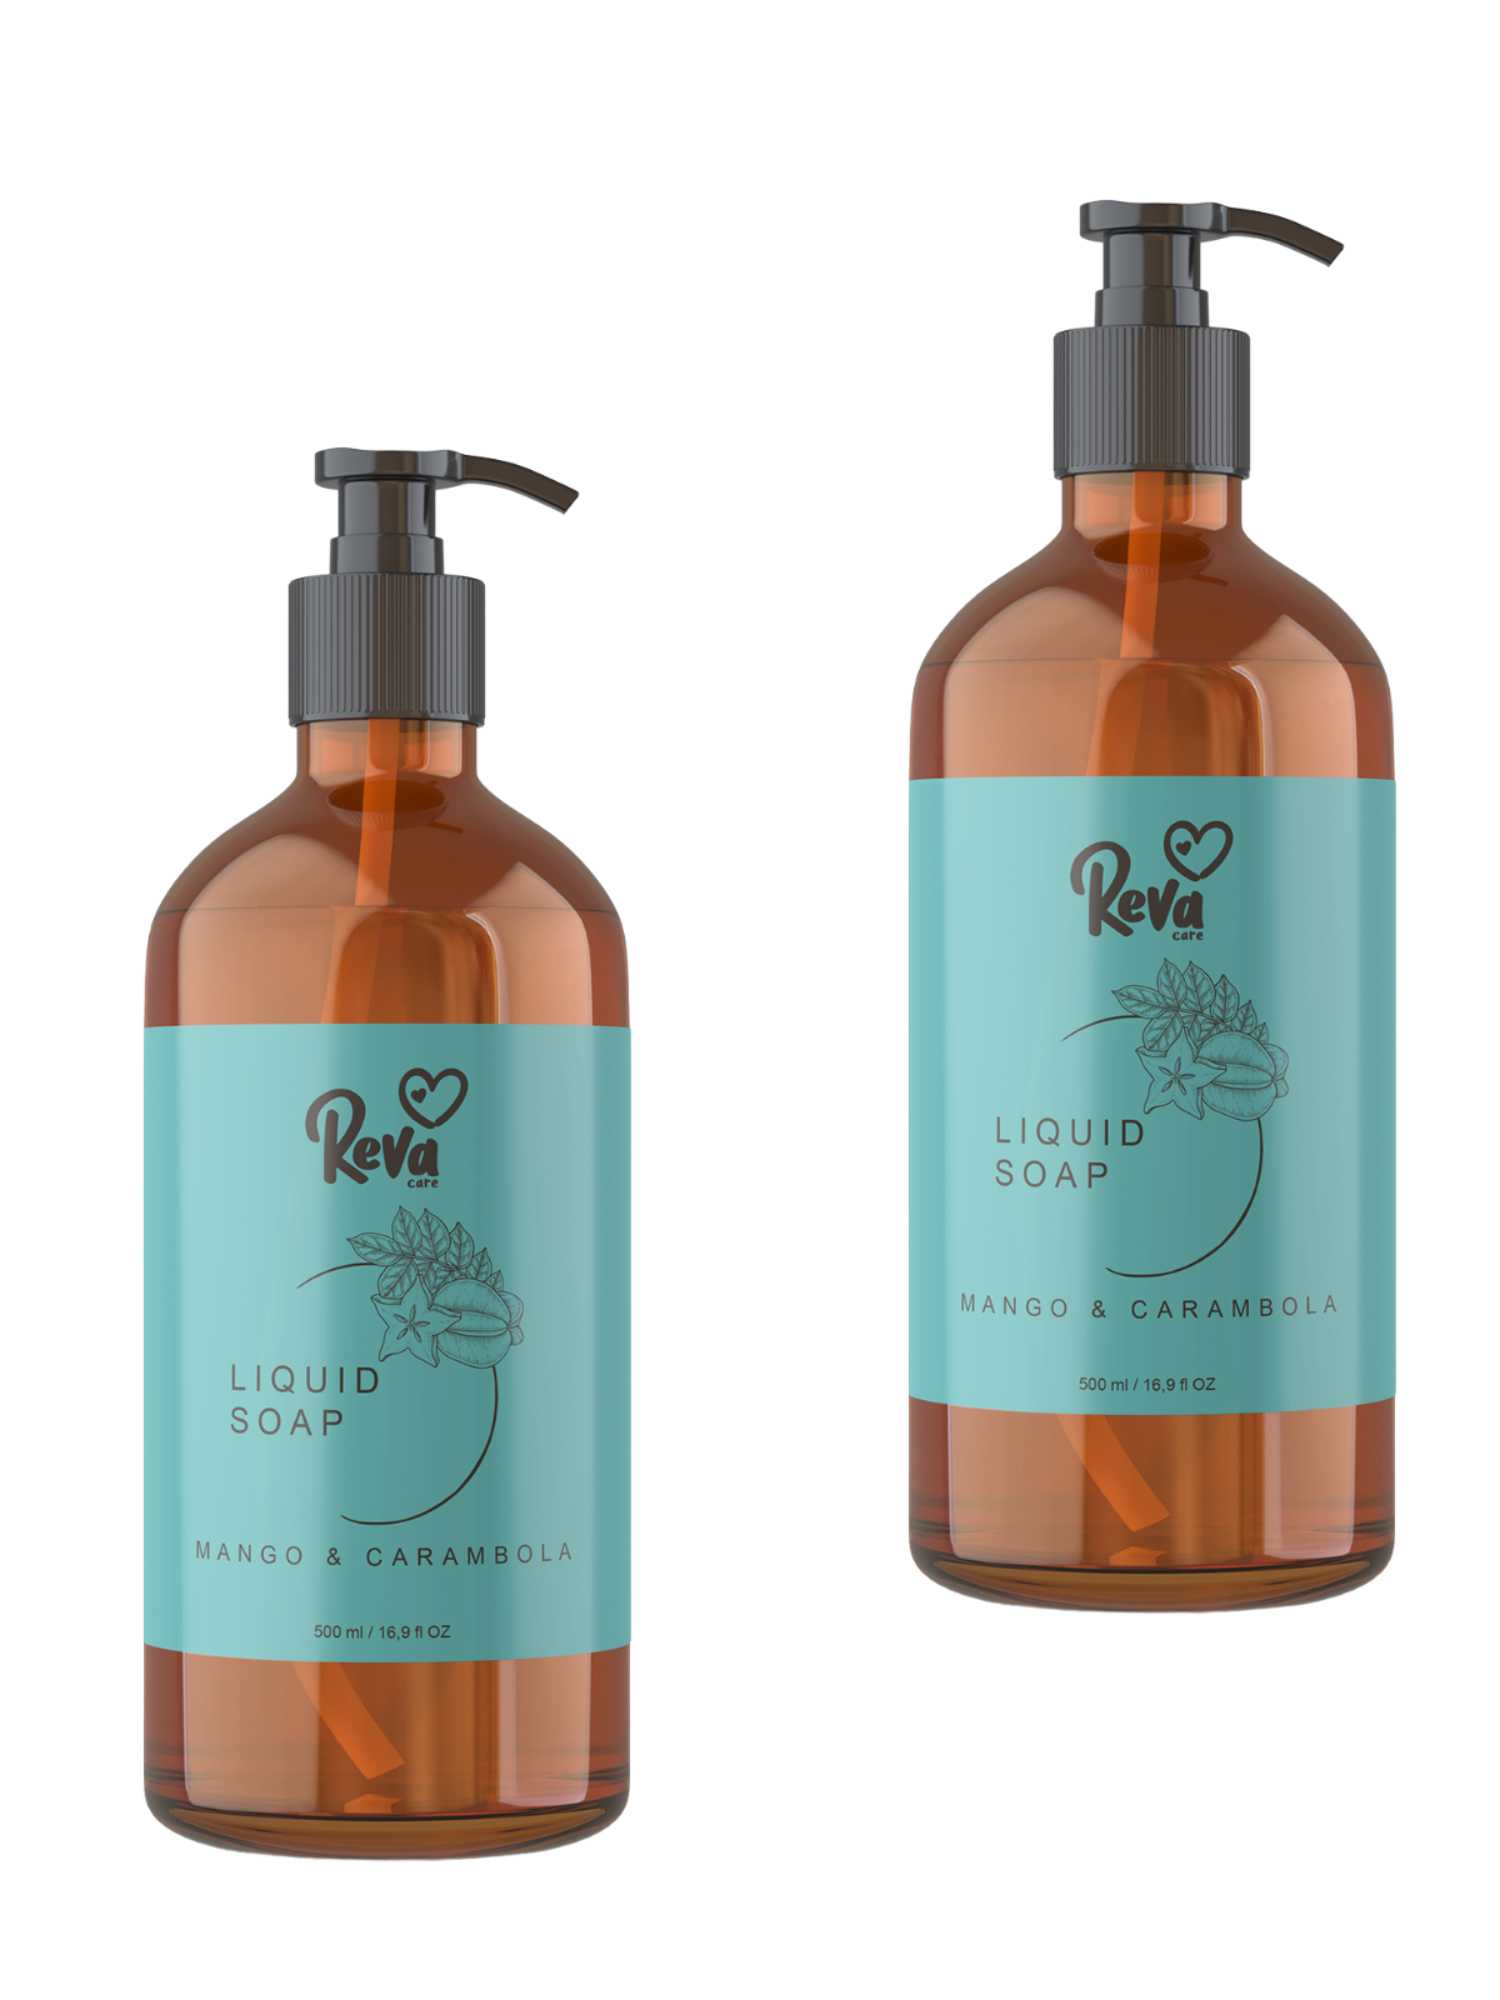 Жидкое мыло для рук Reva Care Cream Soap гипоаллергенное густое Манго карамбоkf 2 уп. 0,5л